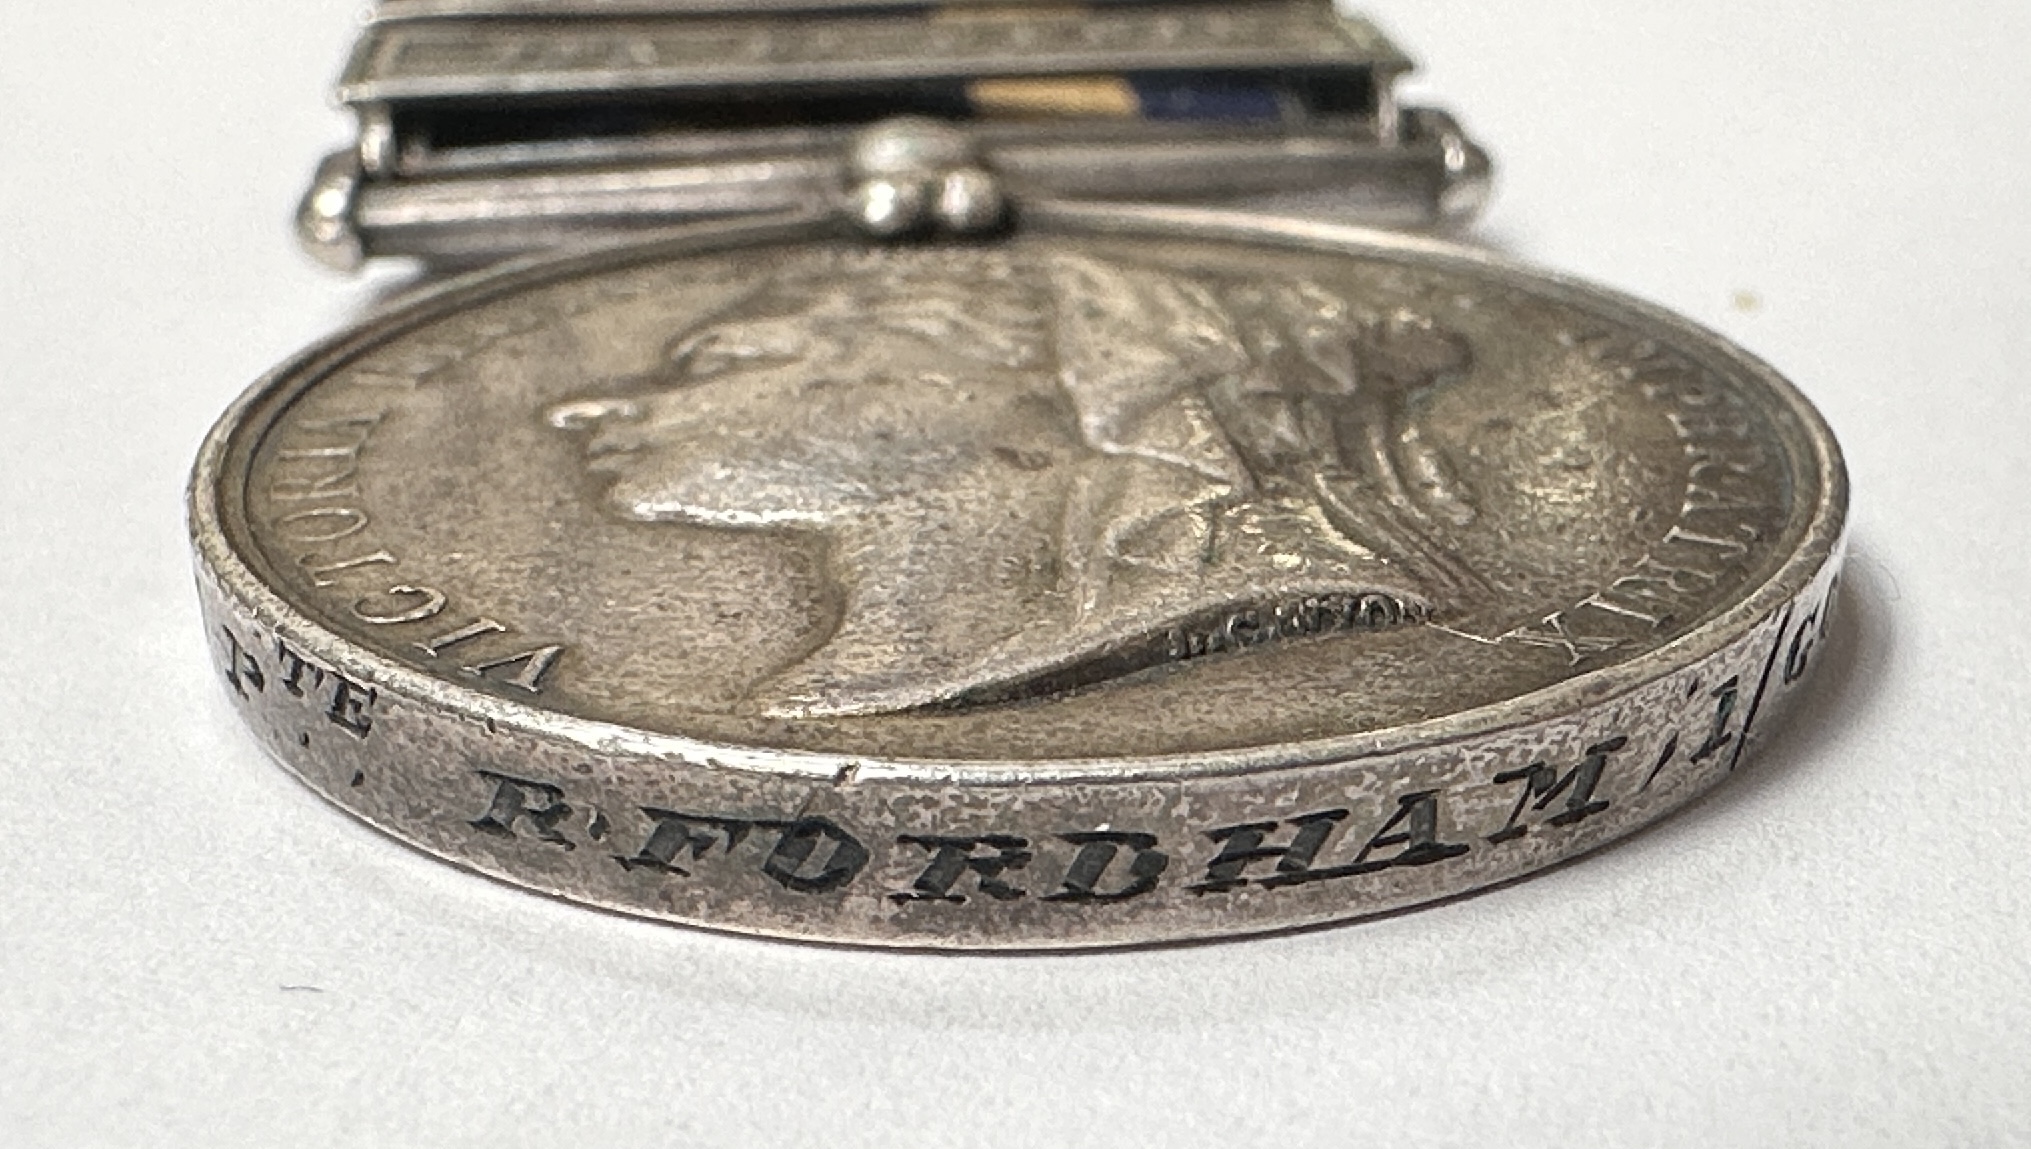 A Queen Victoria Egypt 1882 Medal with five Clasps for TEL-EL-KEBIR, SUAKIN 1884, EL-TEB-TAMAAI, THE - Bild 3 aus 4